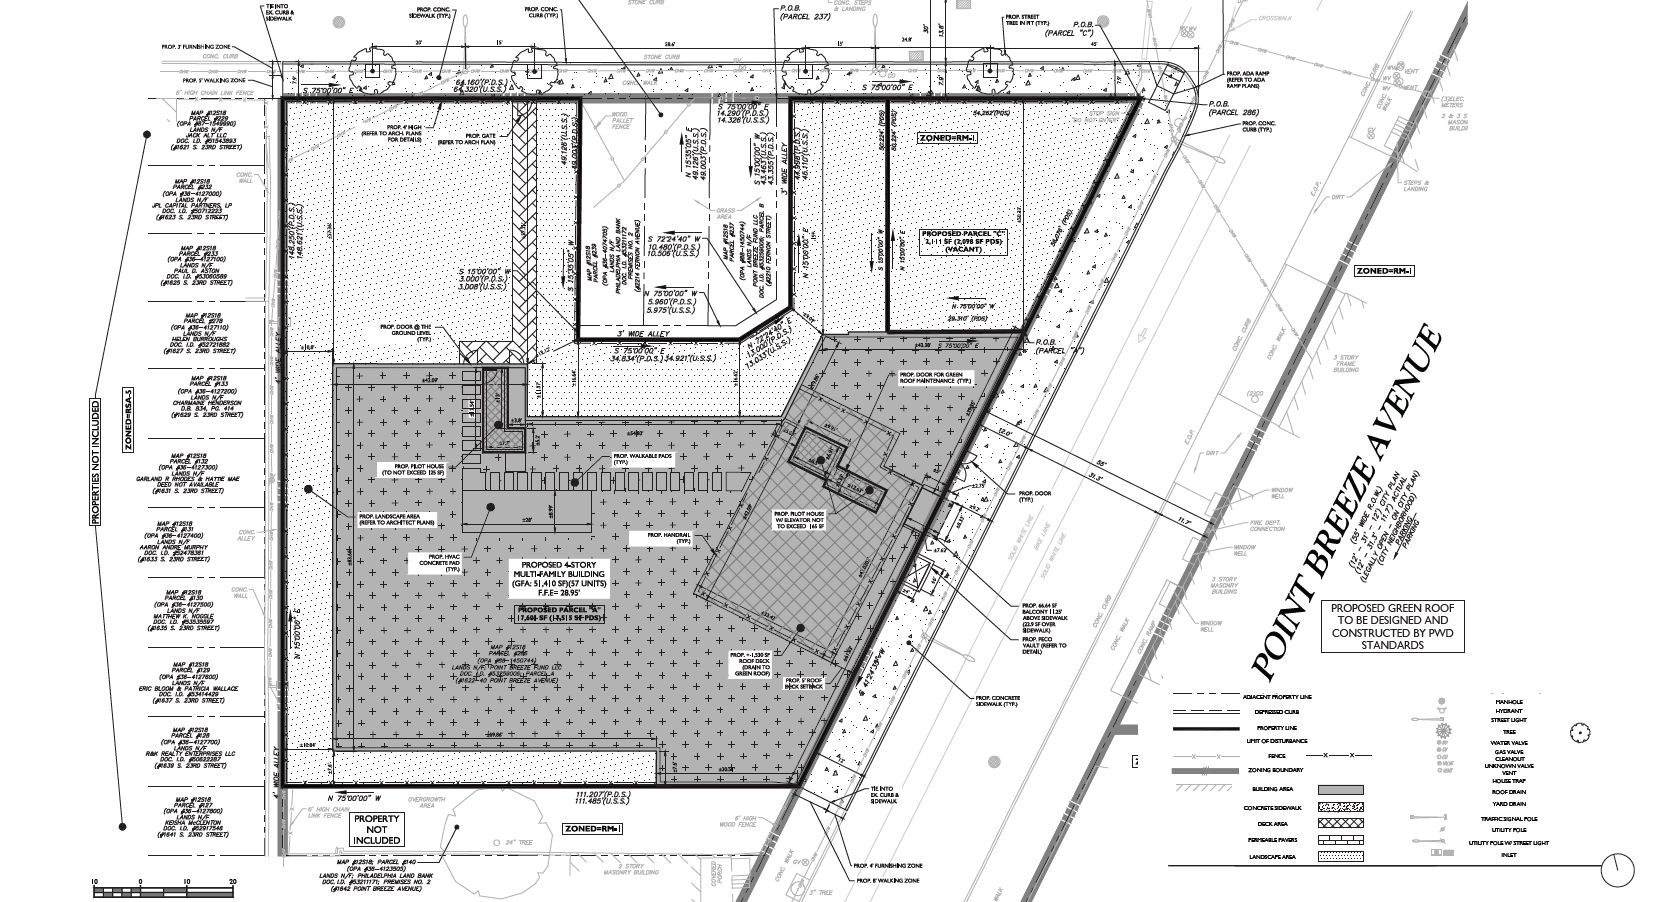 1622-40 Point Breeze Avenue. Site plan. Credit: JKRP Architects via the Civic Design Review